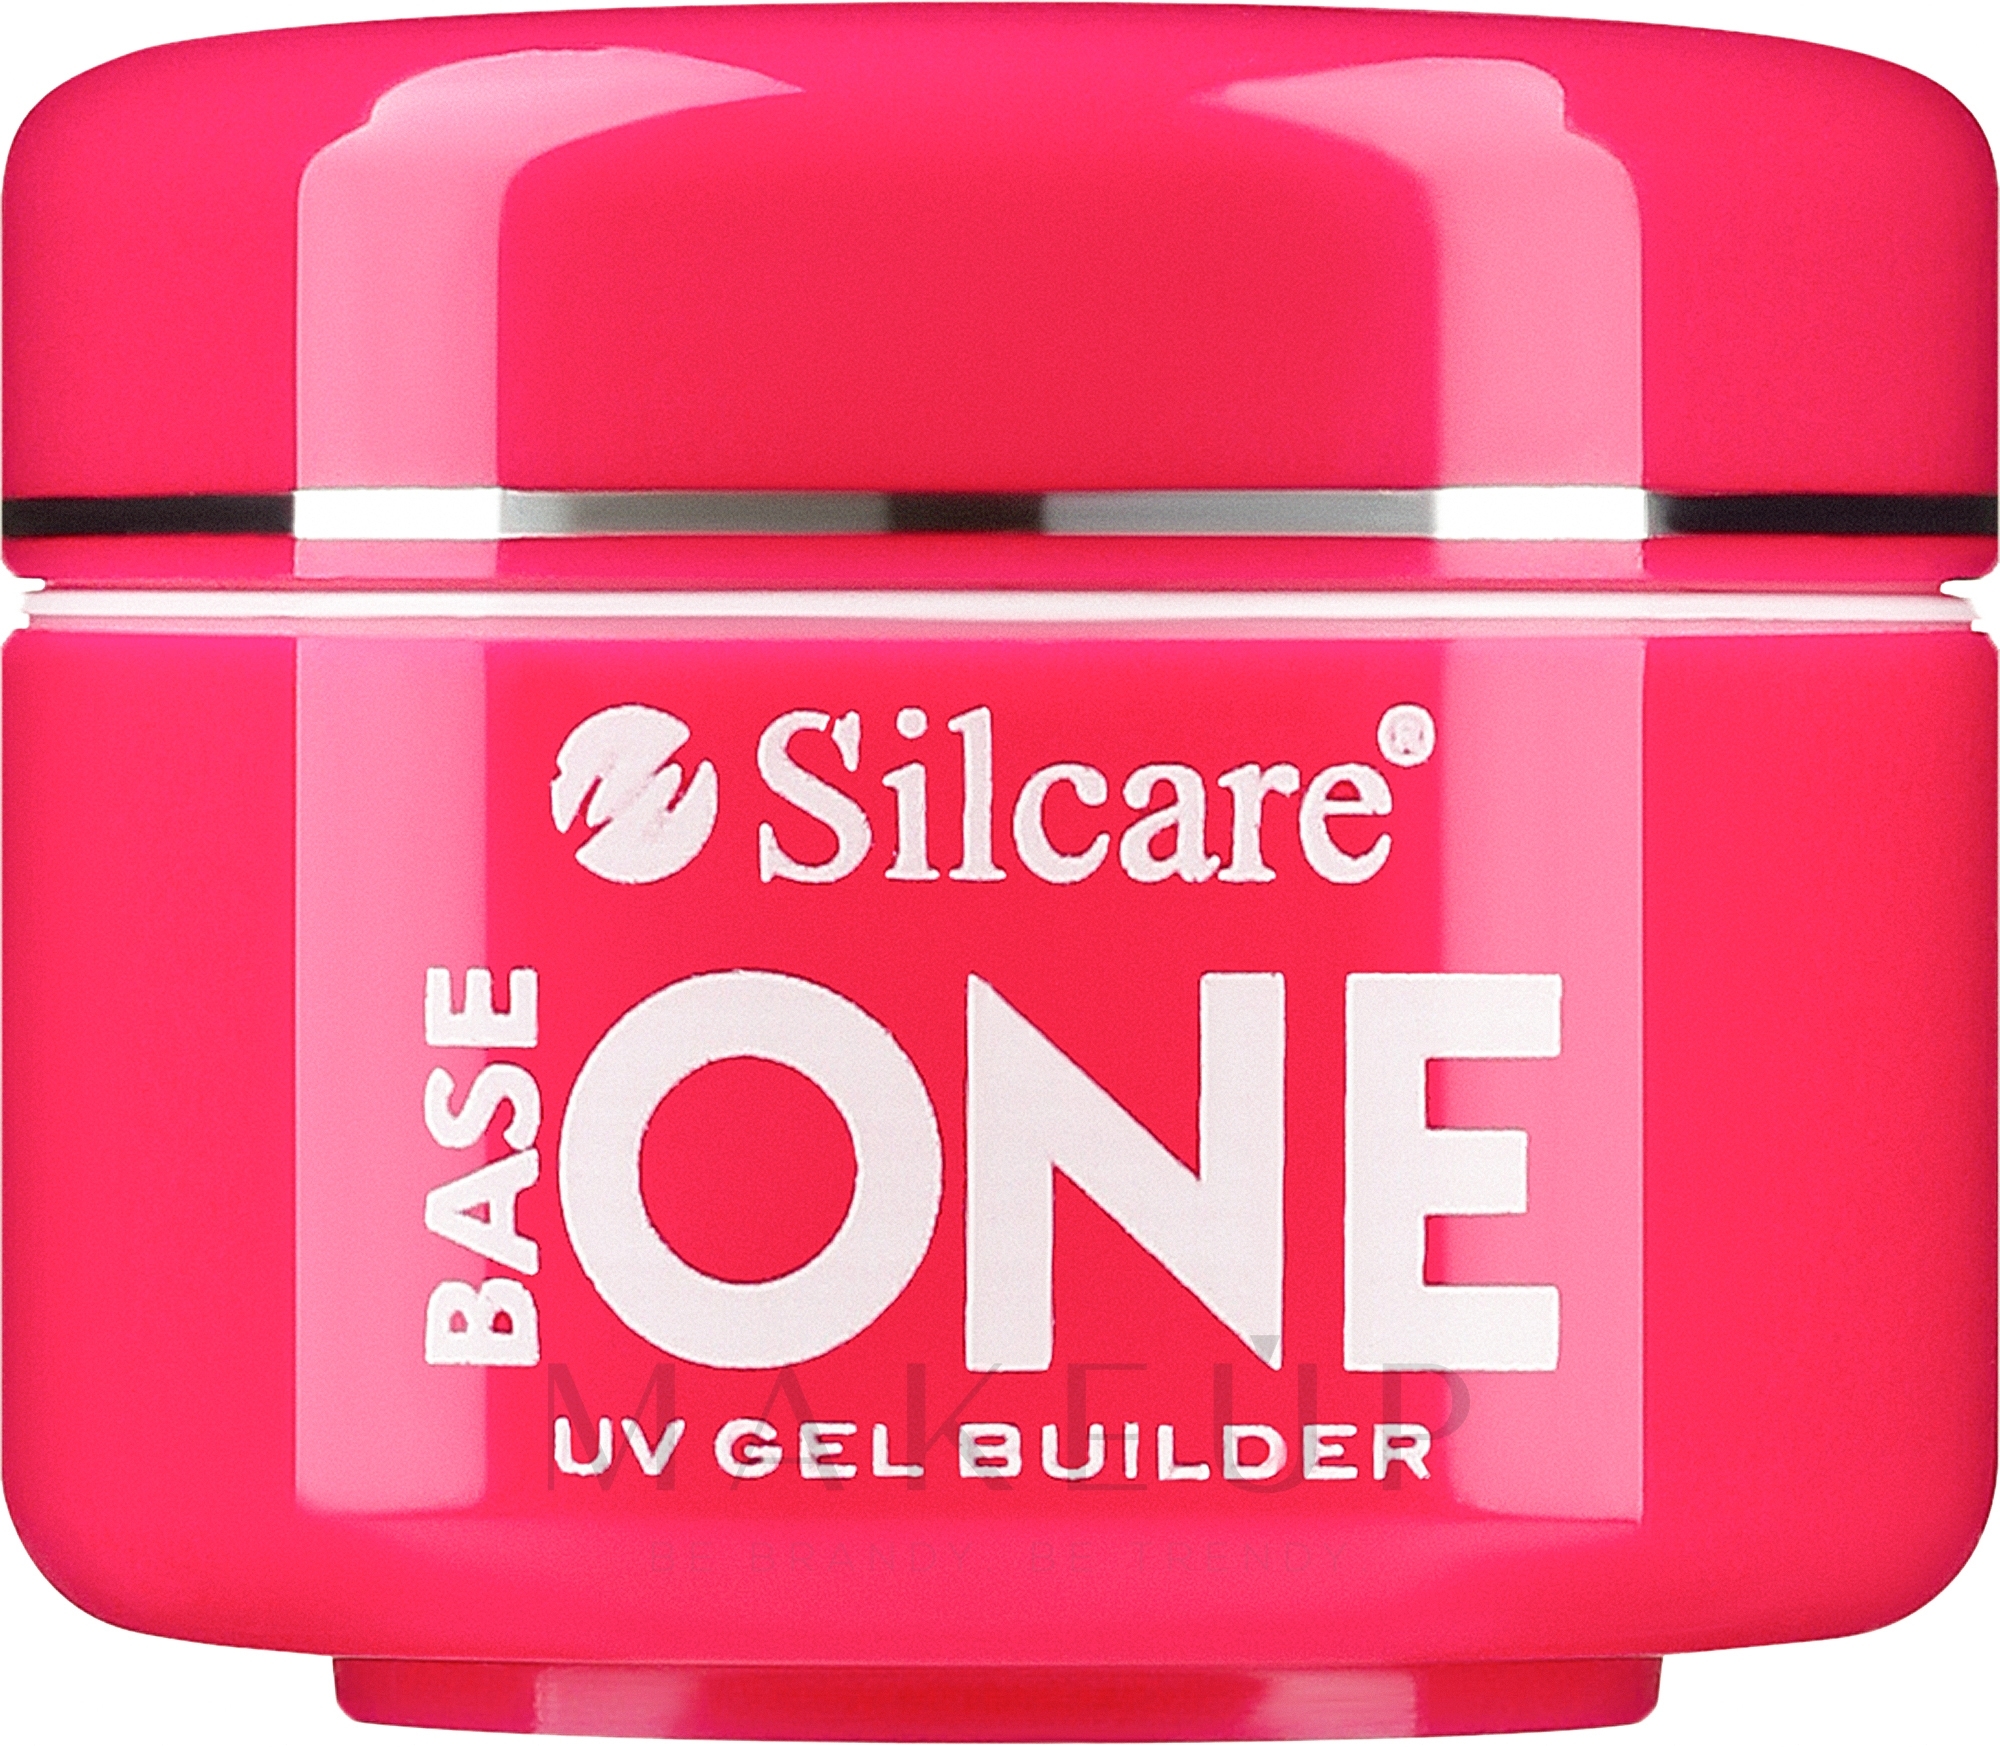 UV Aufbaugel Cover - Silcare Base One UV Gel Builder Cover — Bild 15 g